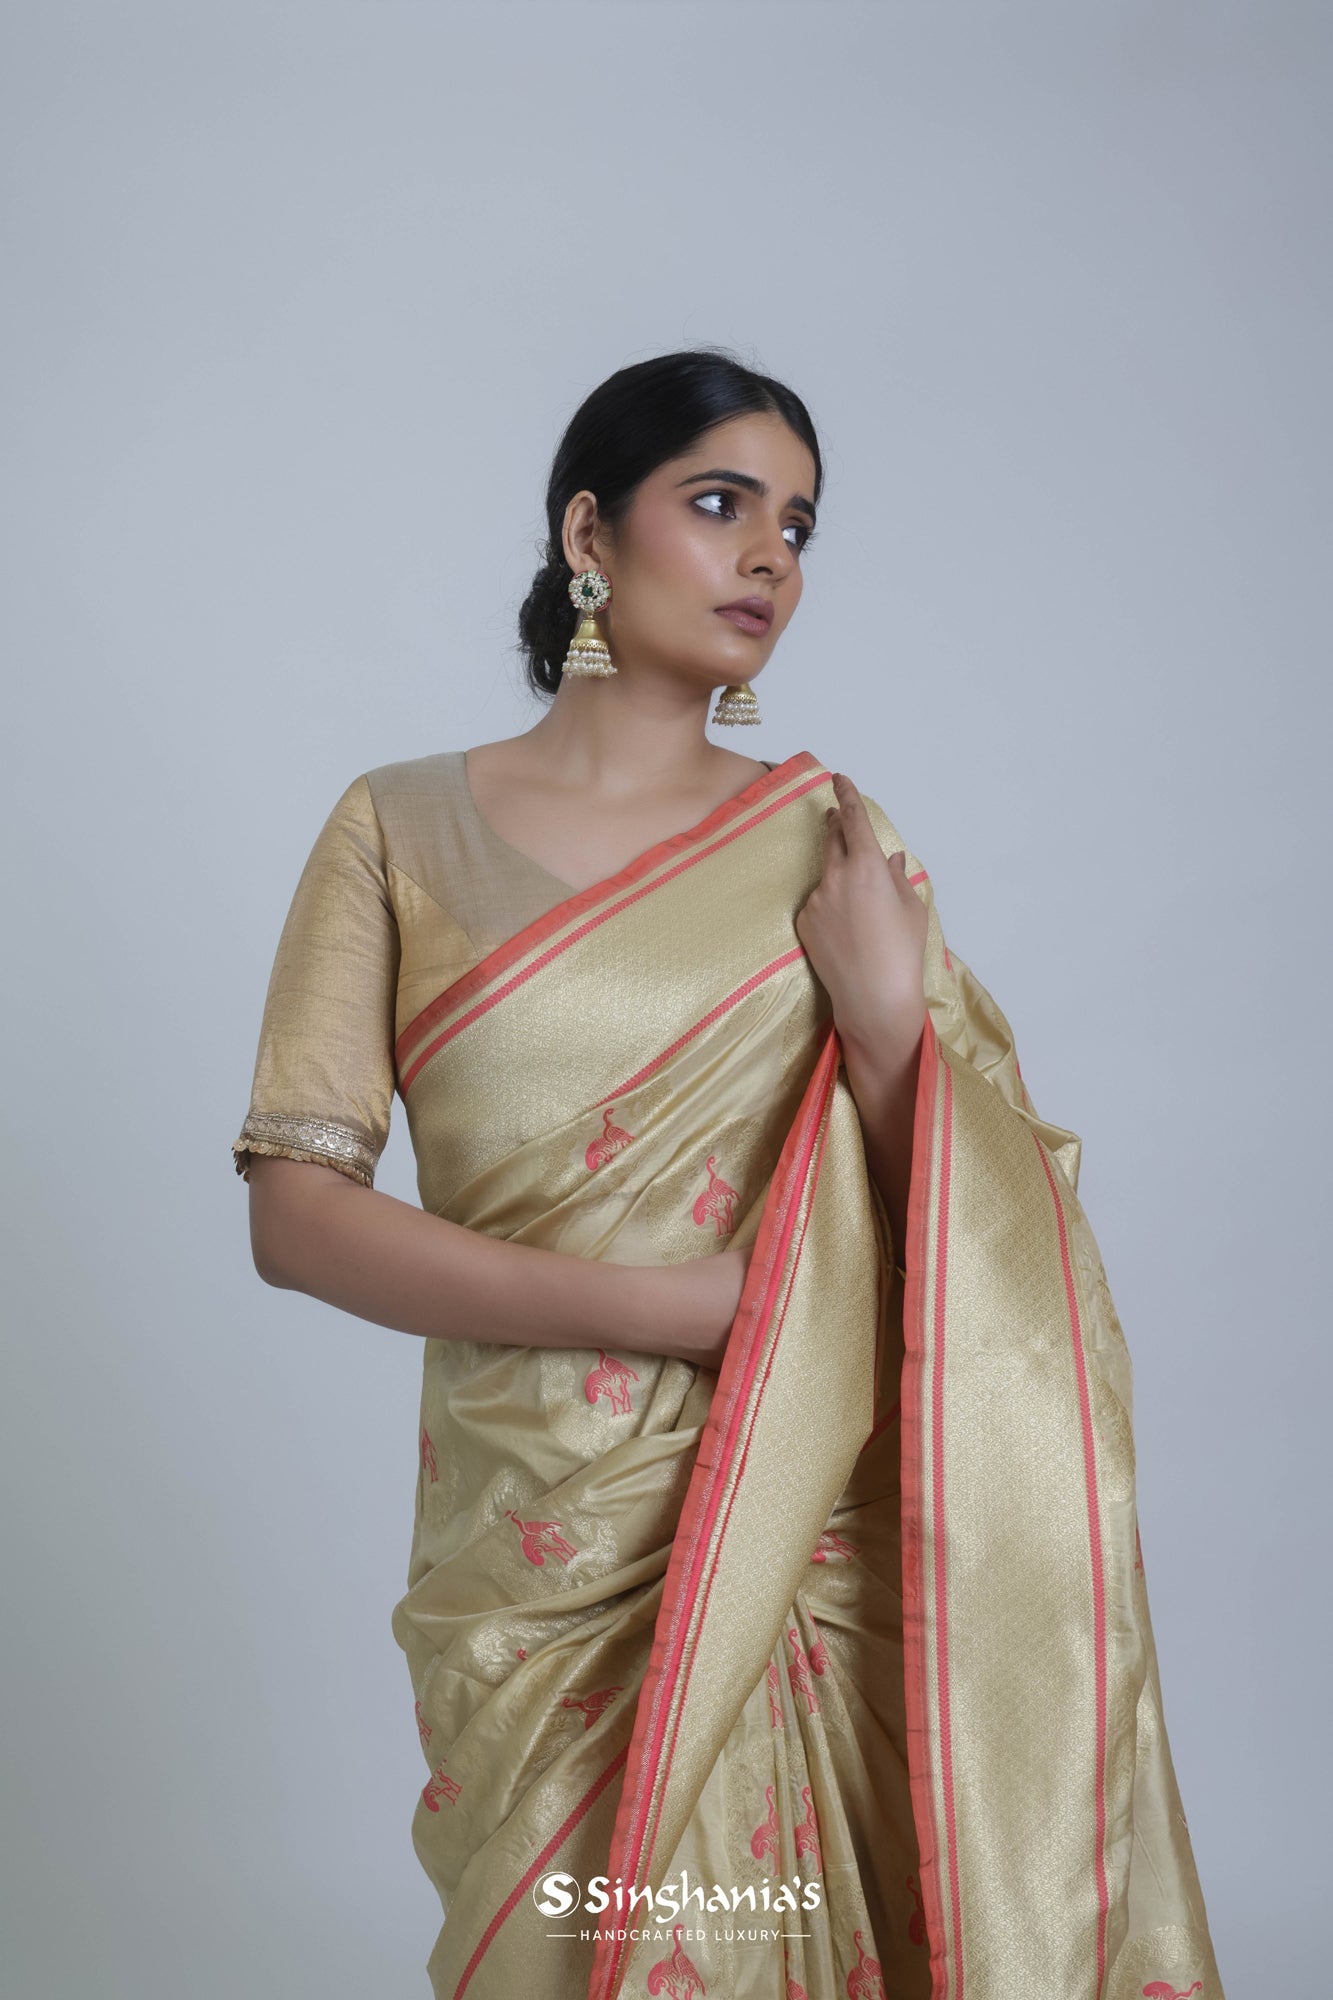 Gorgeous Off White Organic Banarasi Saree Wedding Wear, बनारसी साड़ी -  Prathmesh Enterprises, Mumbai | ID: 26135518633